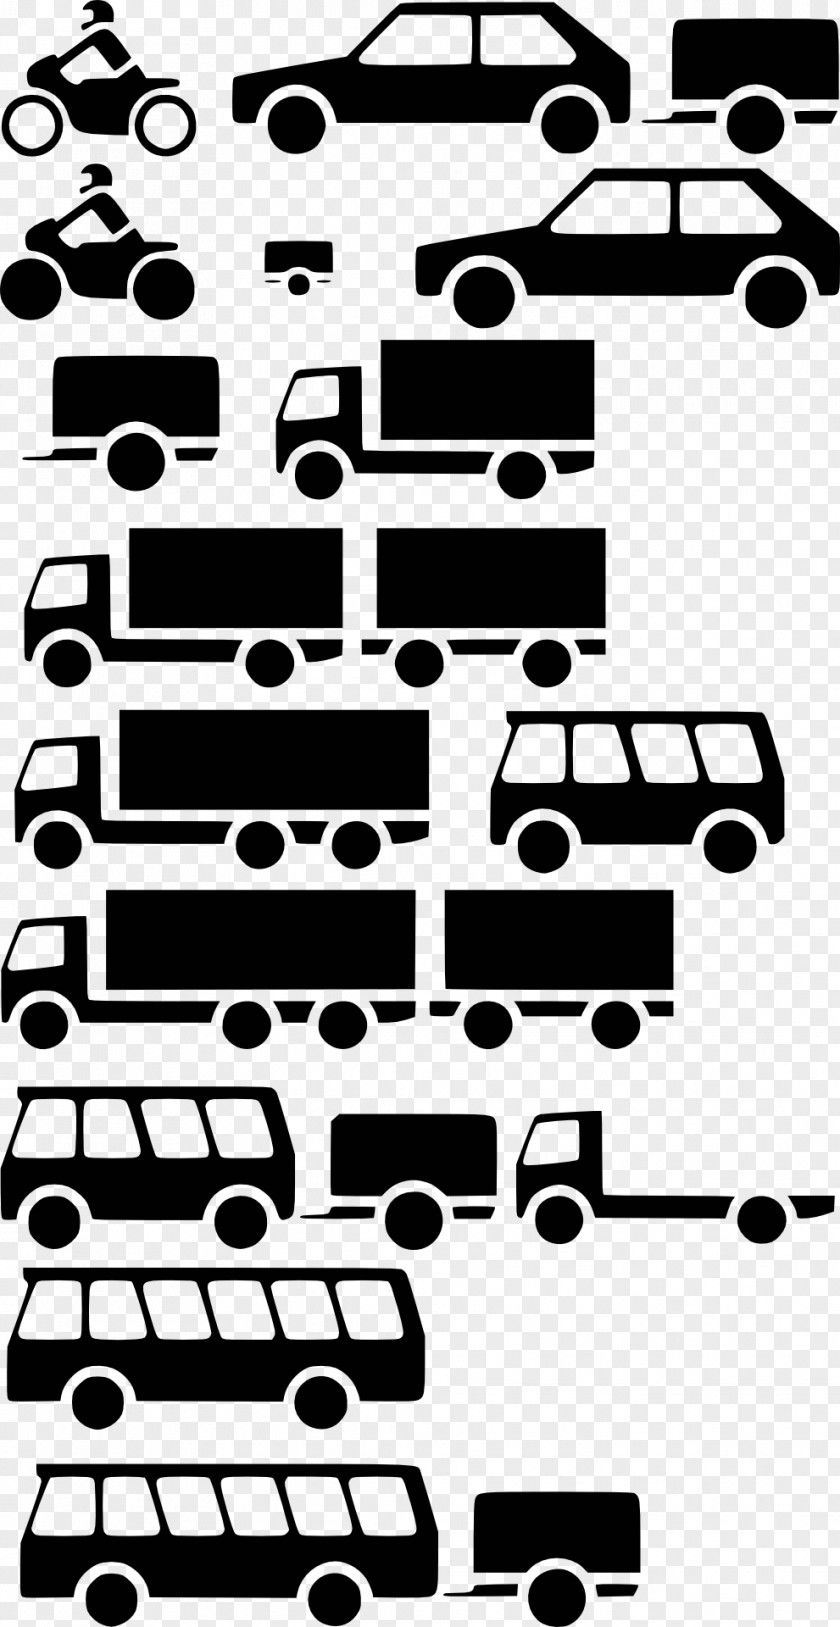 Bus Car Vehicle Truck Campervans PNG